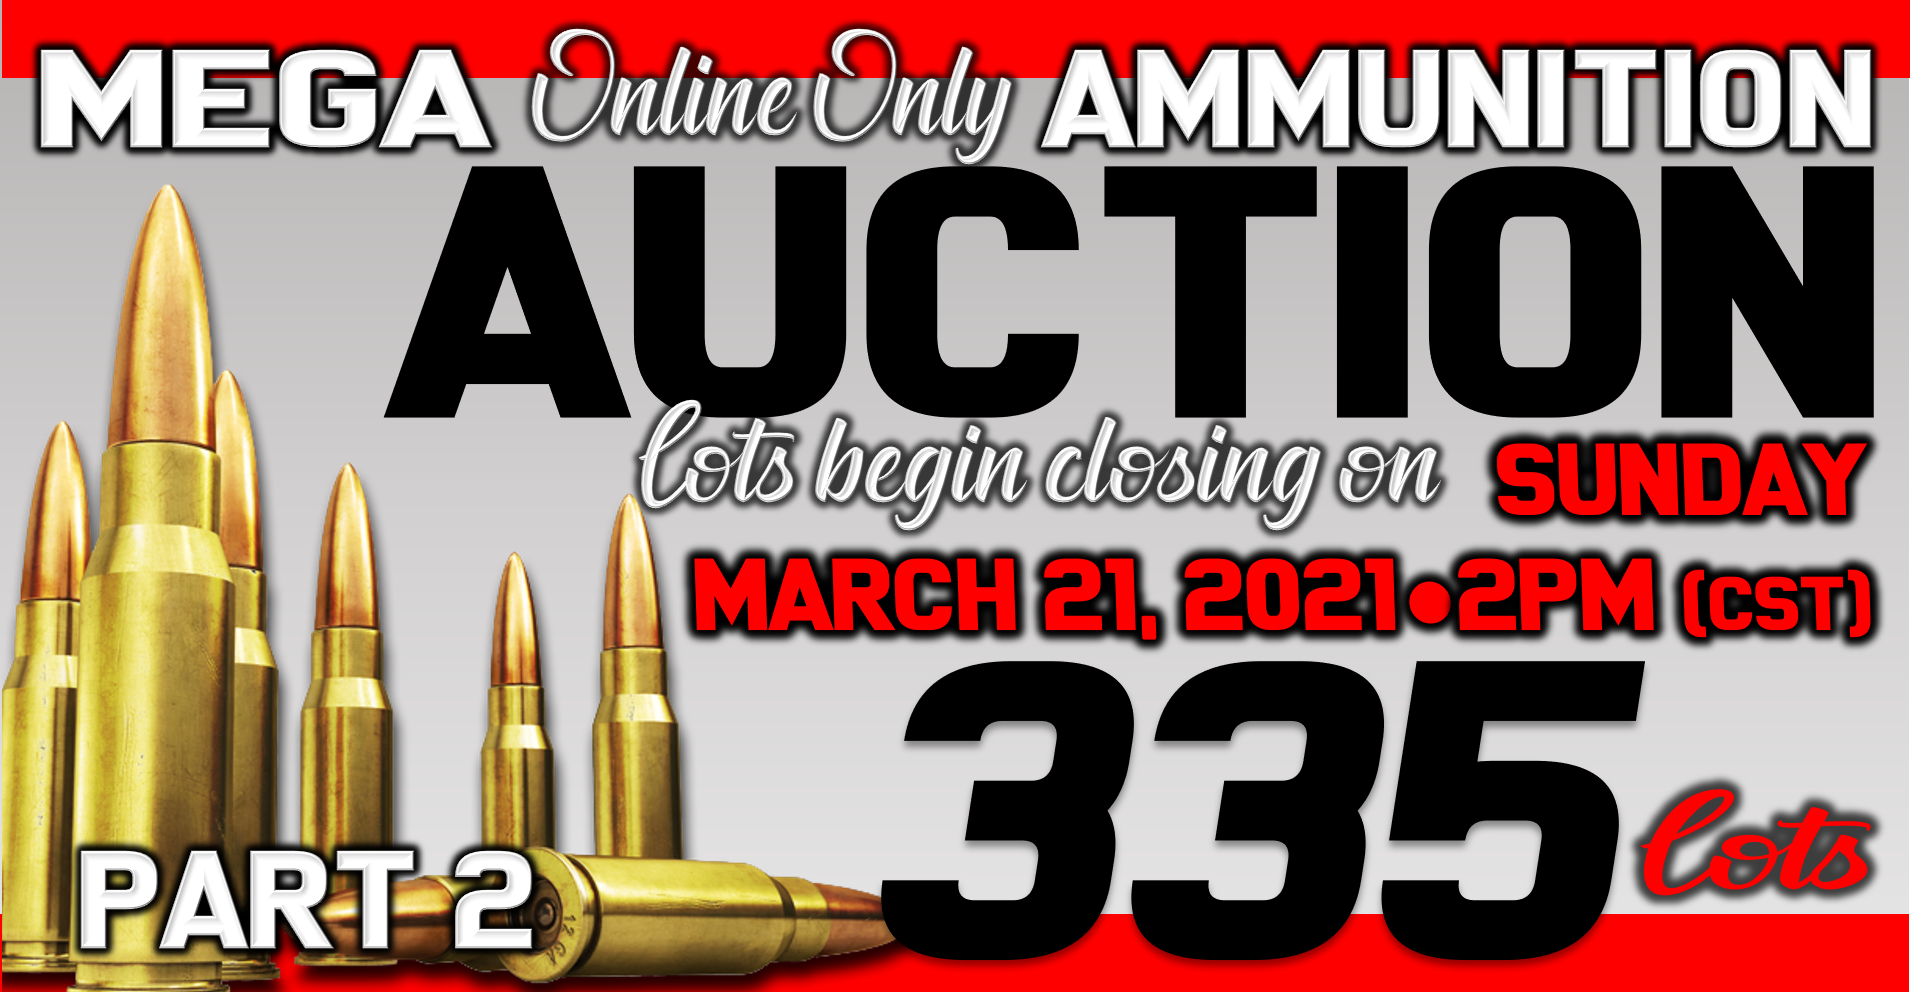 Online Only Ammunition Auction – Part 2